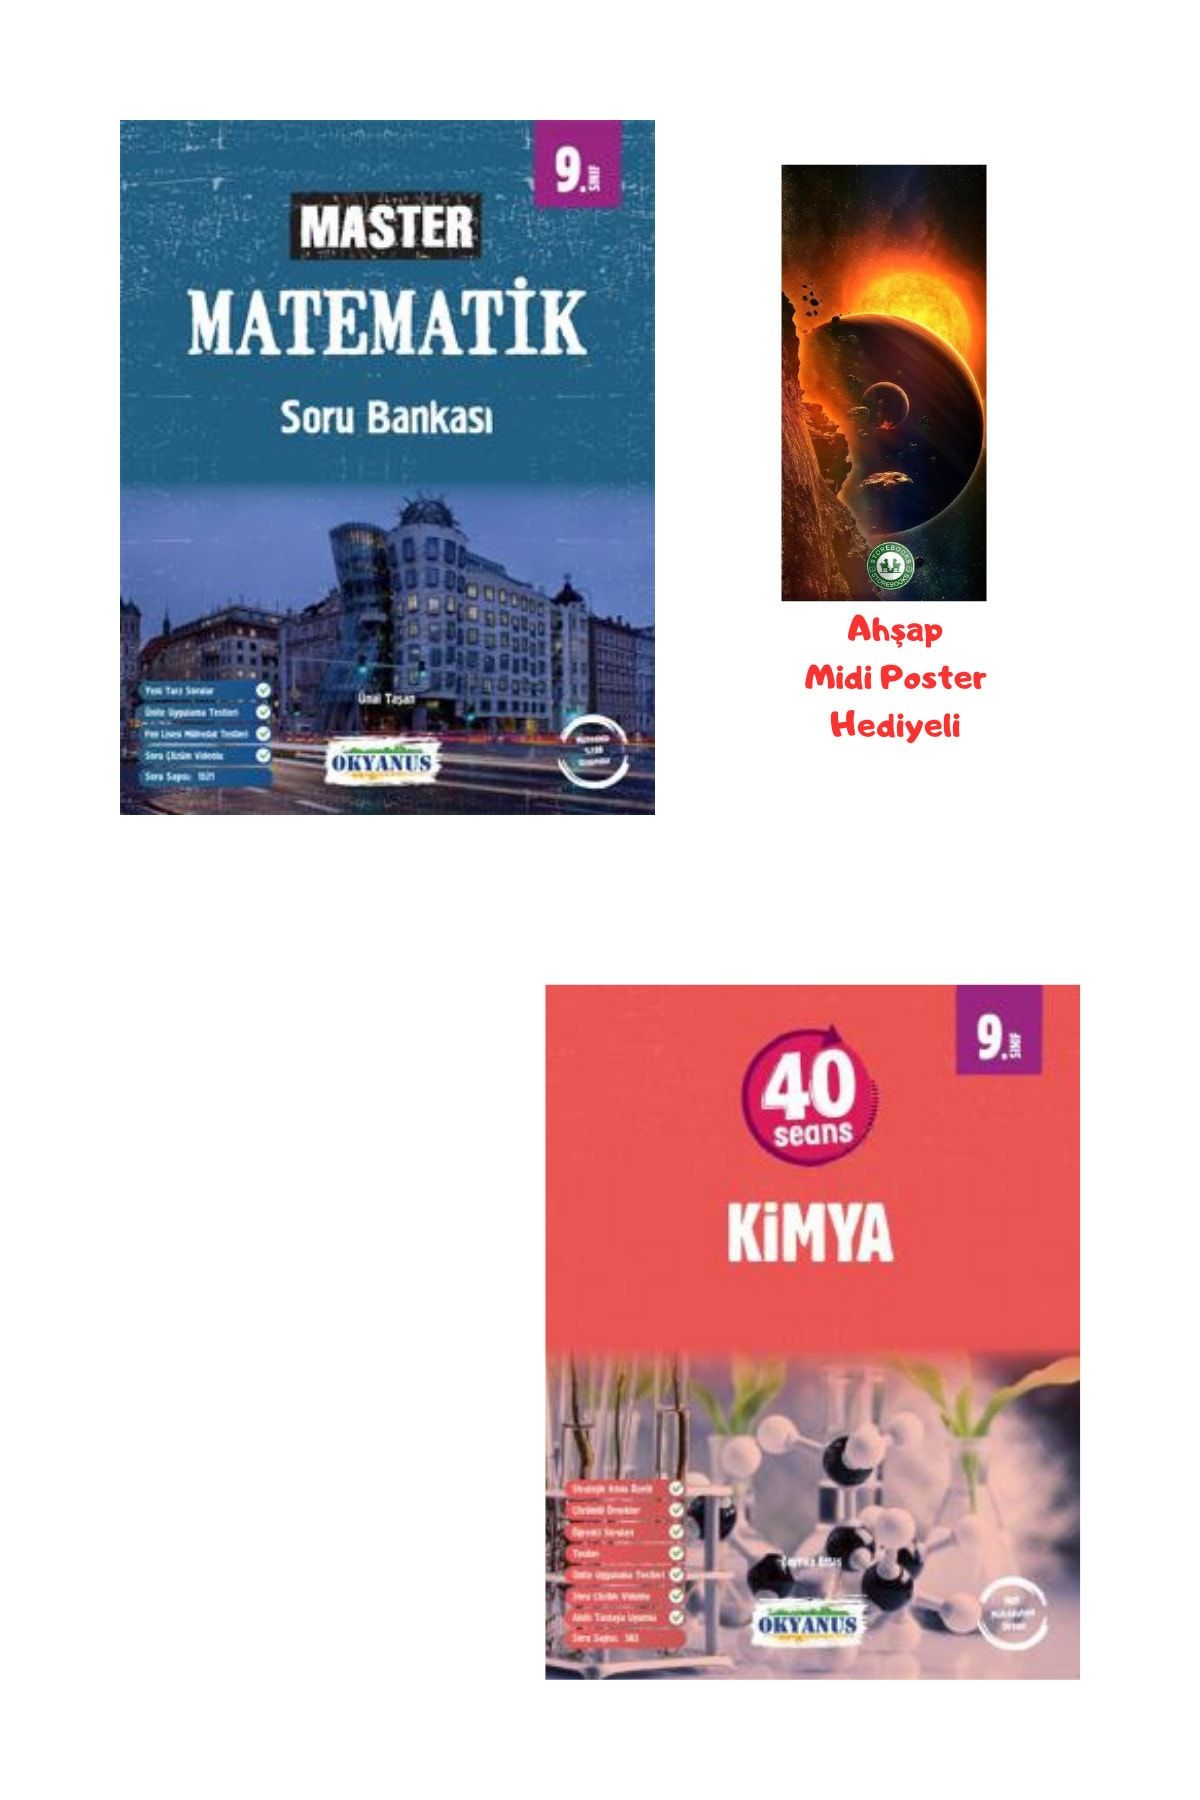 Okyanus Yayınları 9.Sınıf Master Matematik Soru Bankası ve 40 Seansta Kimya Ahşap Poster Hediyeli